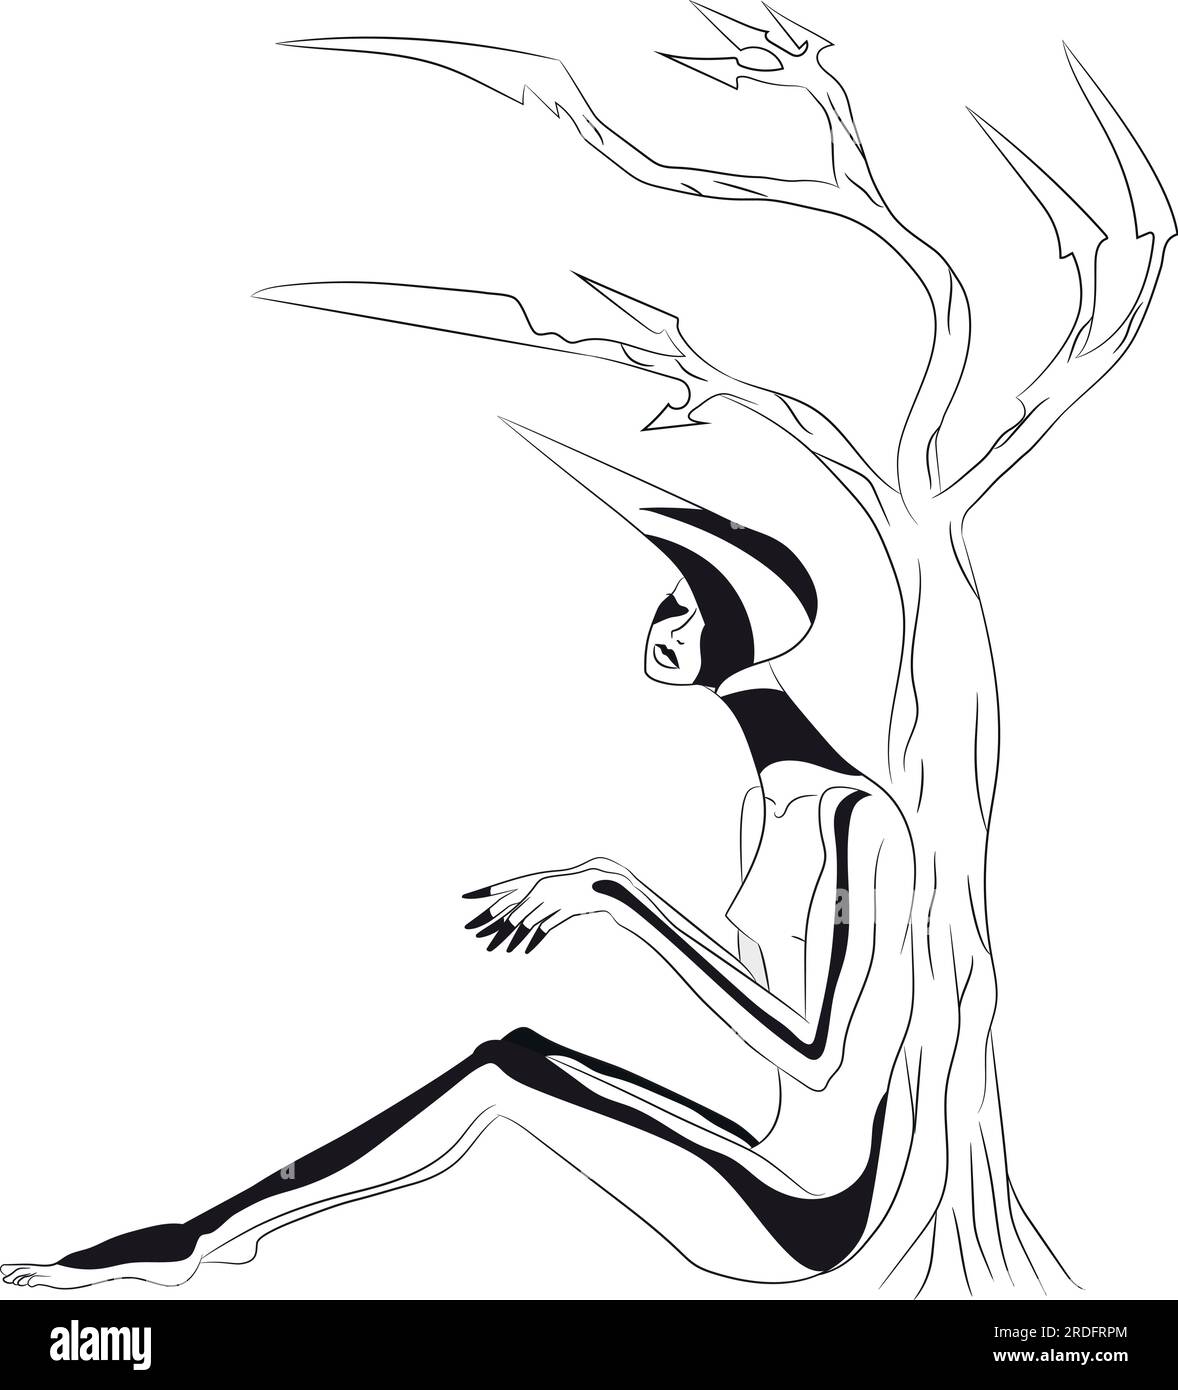 Abstraktes Porträt einer Frau mit schwarzen Linien am Körper und einem spitzen Kopfschmuck in der Nähe eines scharfen Baumes. Handgezeichnete leere Kontur isoliert auf einem weißen Ba Stock Vektor